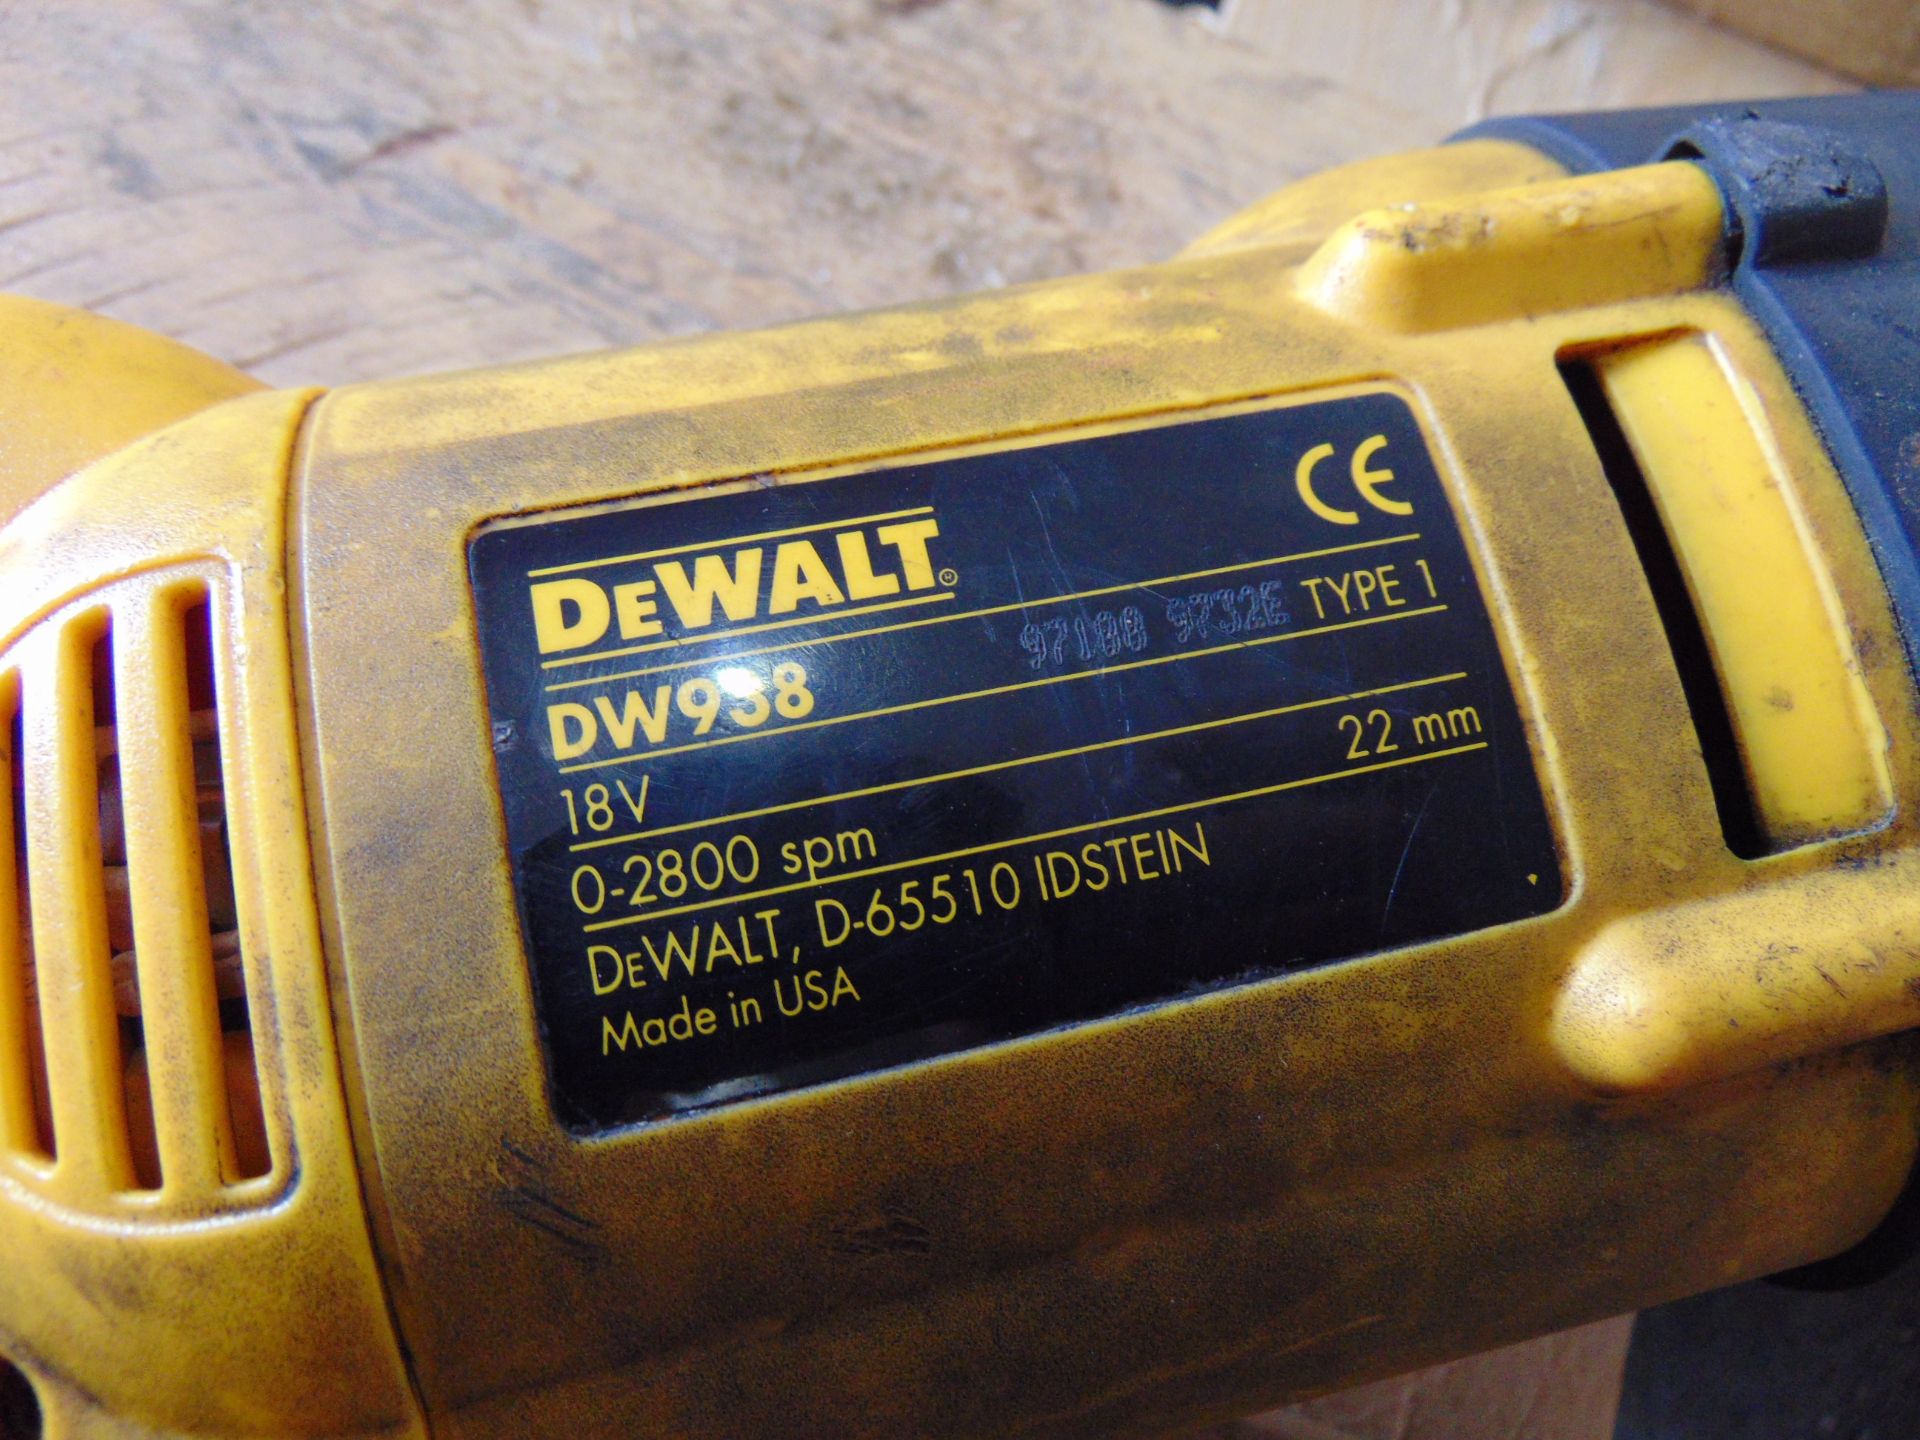 DeWalt DW938 Reciprocating Saw - Image 4 of 6